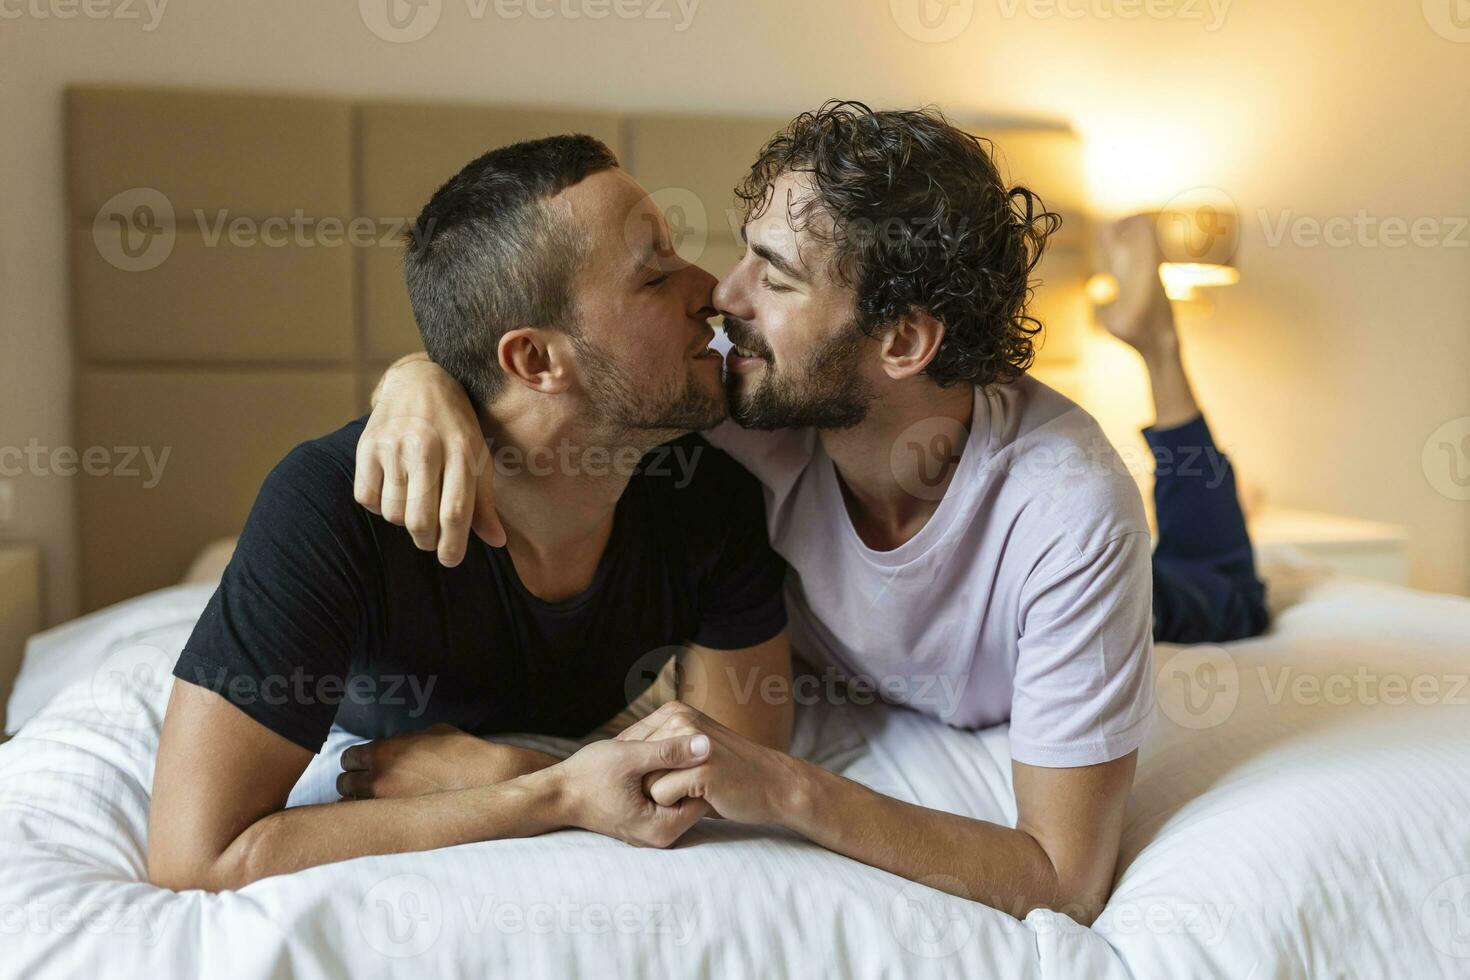 dos joven hombre lgbtq gay Pareja Fechado en amor abrazando disfrutando íntimo oferta sensual momento juntos besos con ojos cerrado foto